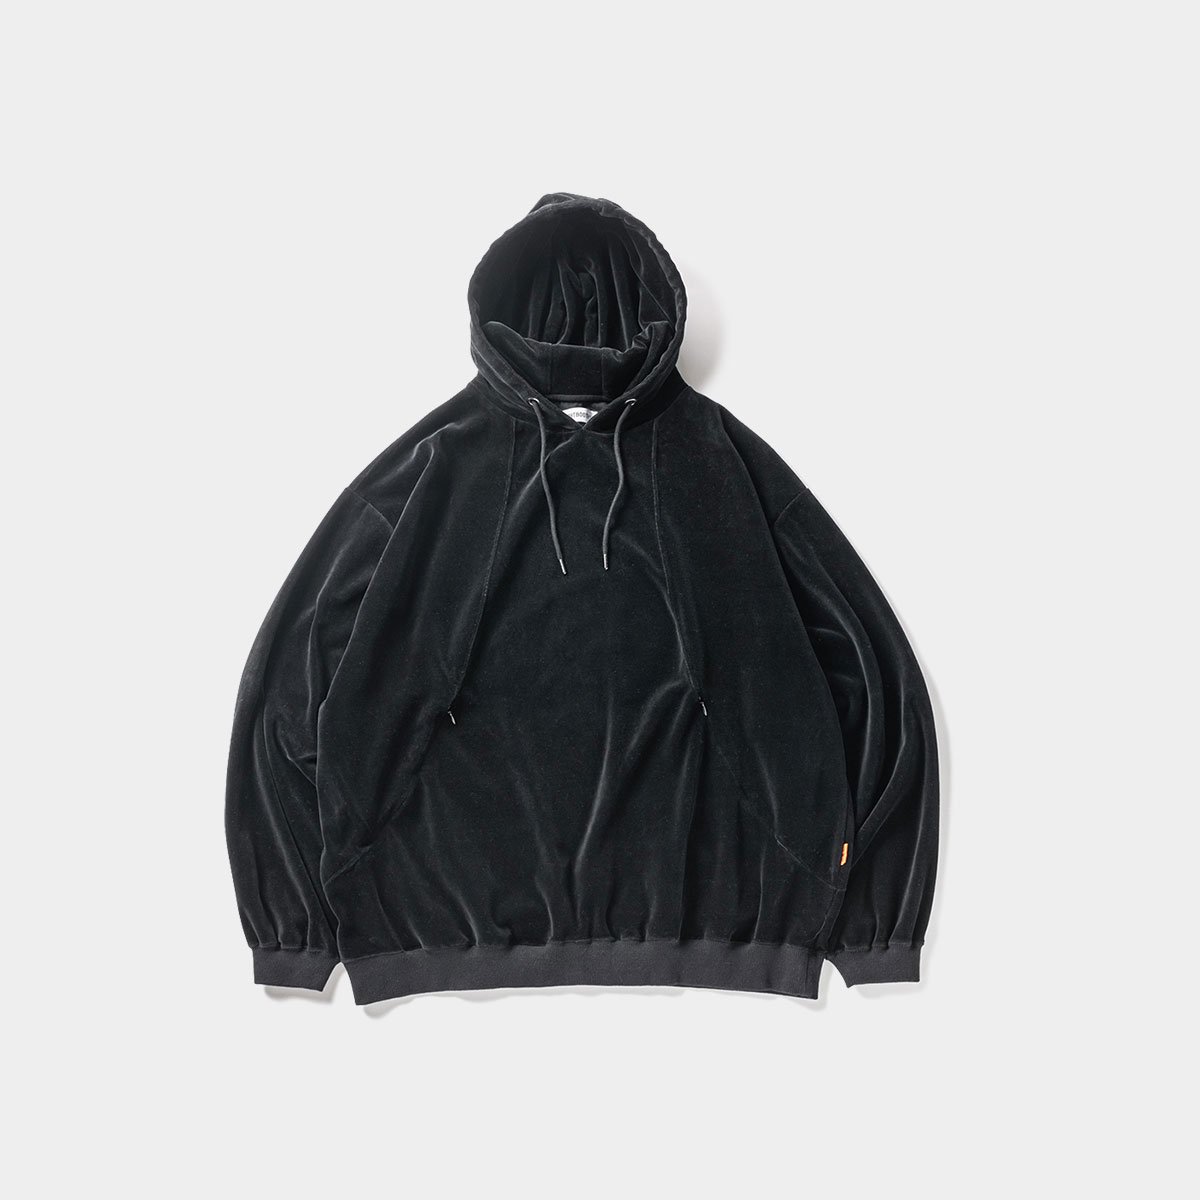 Tightbooth velour hoodie black M￼メンズ